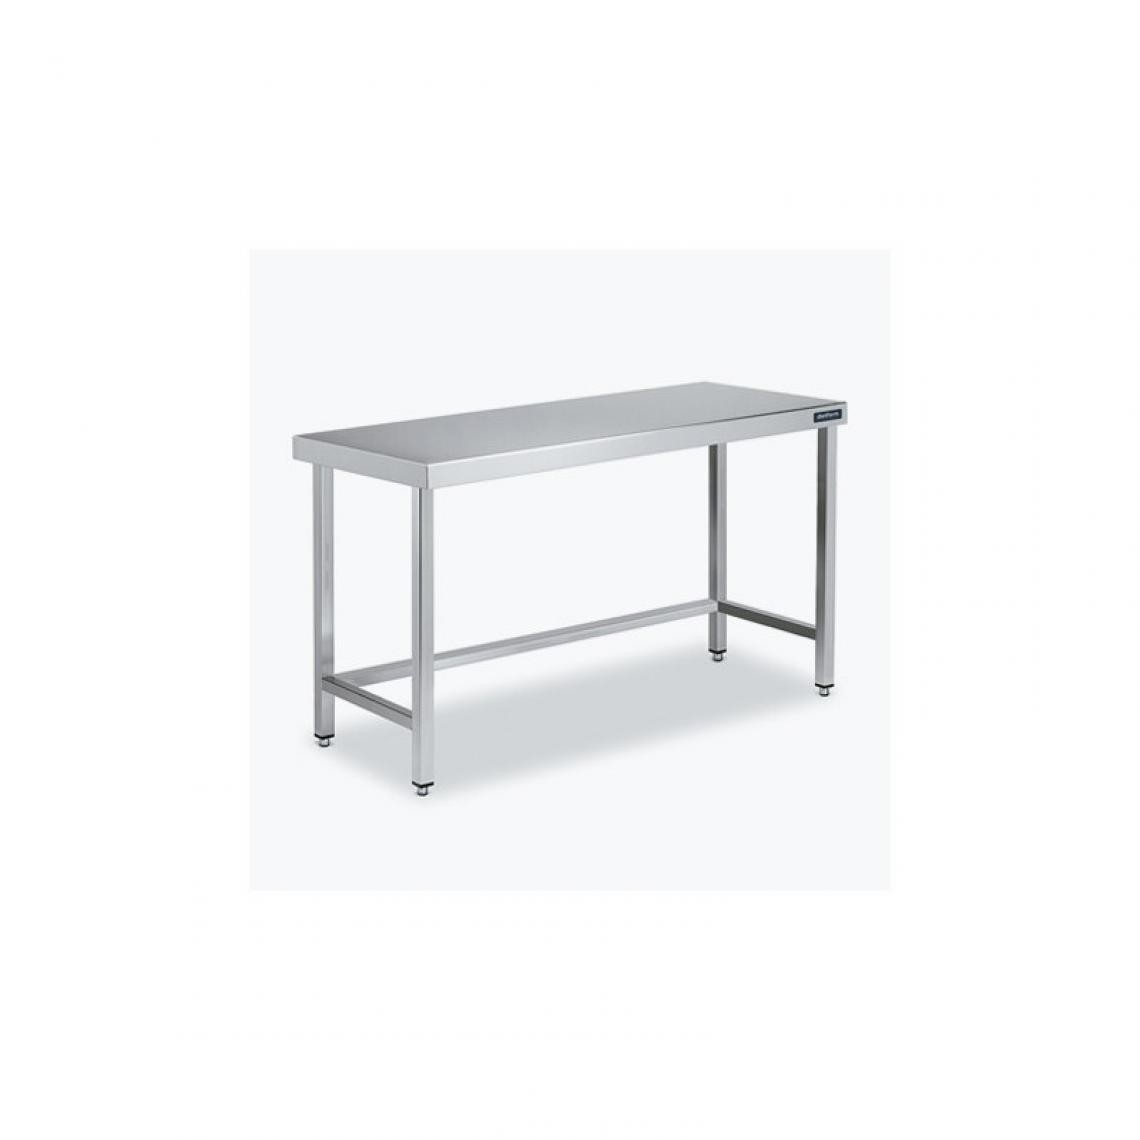 DISTFORM - Table Central 600x550 sans Étagère - Distform - Inox 18/10600x550x850mm - Tables à manger